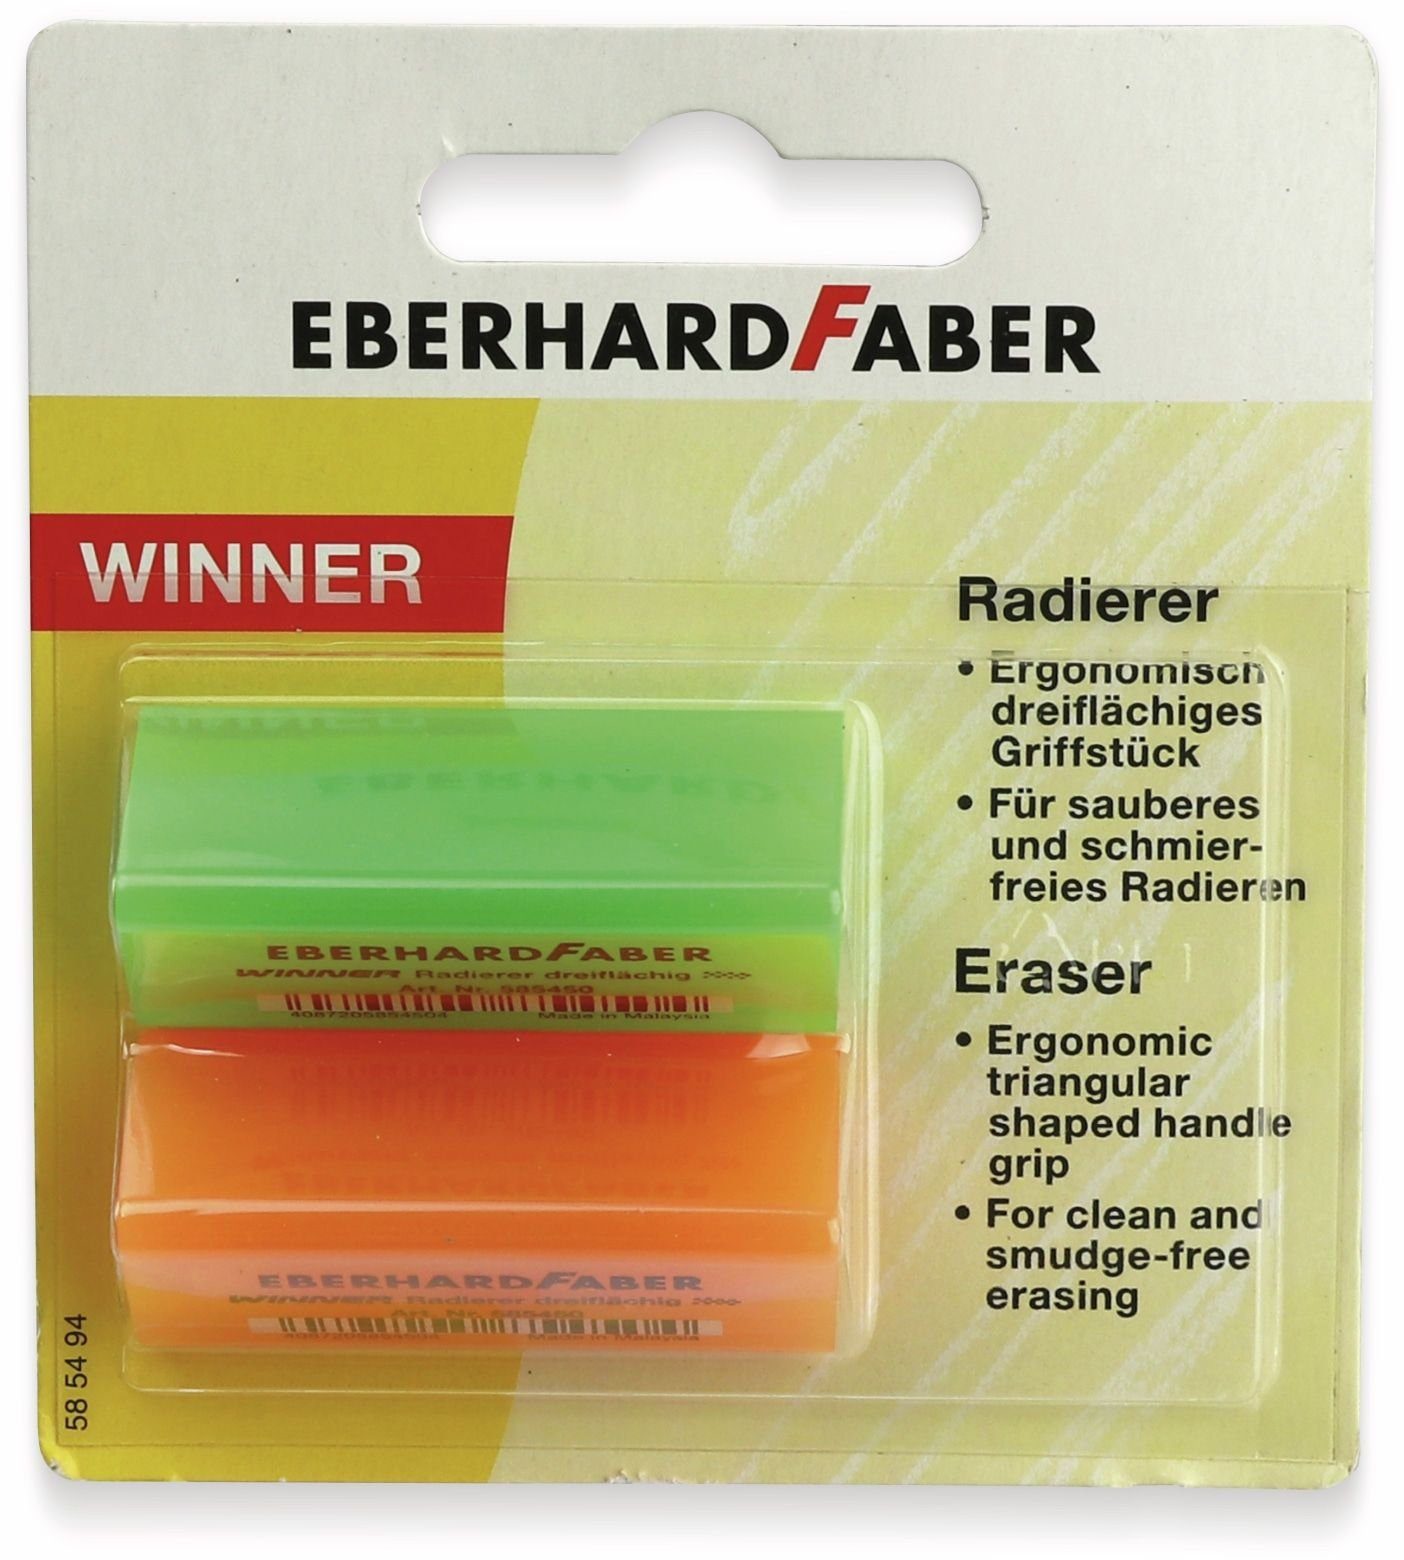 neonfarben, EBERHARD Radierer FABER Winner Eberhard Faber Bleistift 2